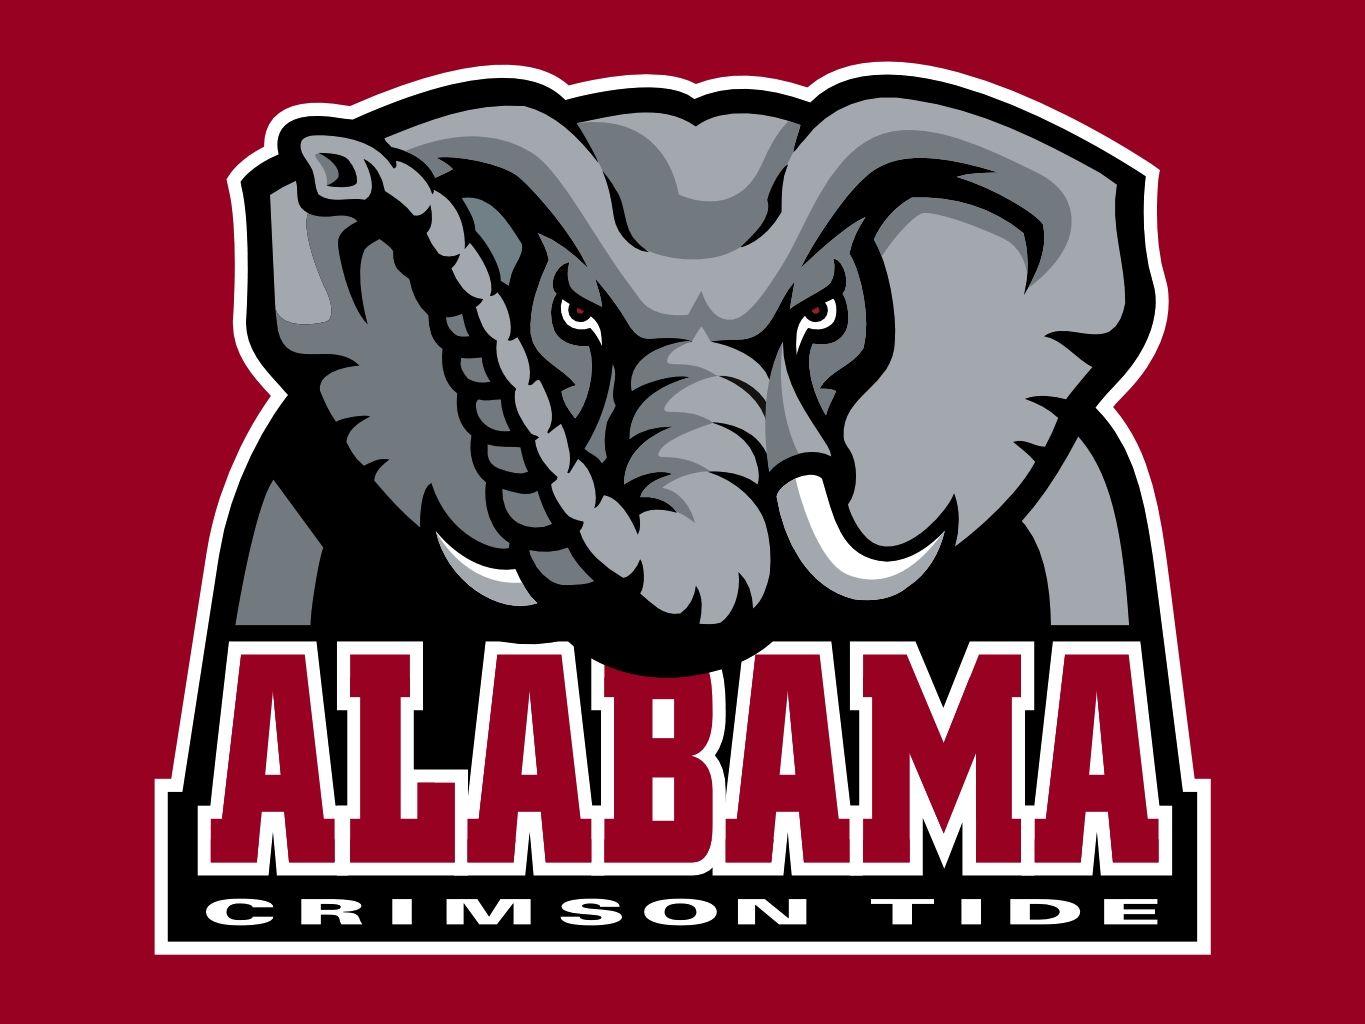 university-of-alabama-elephant-logo-logodix